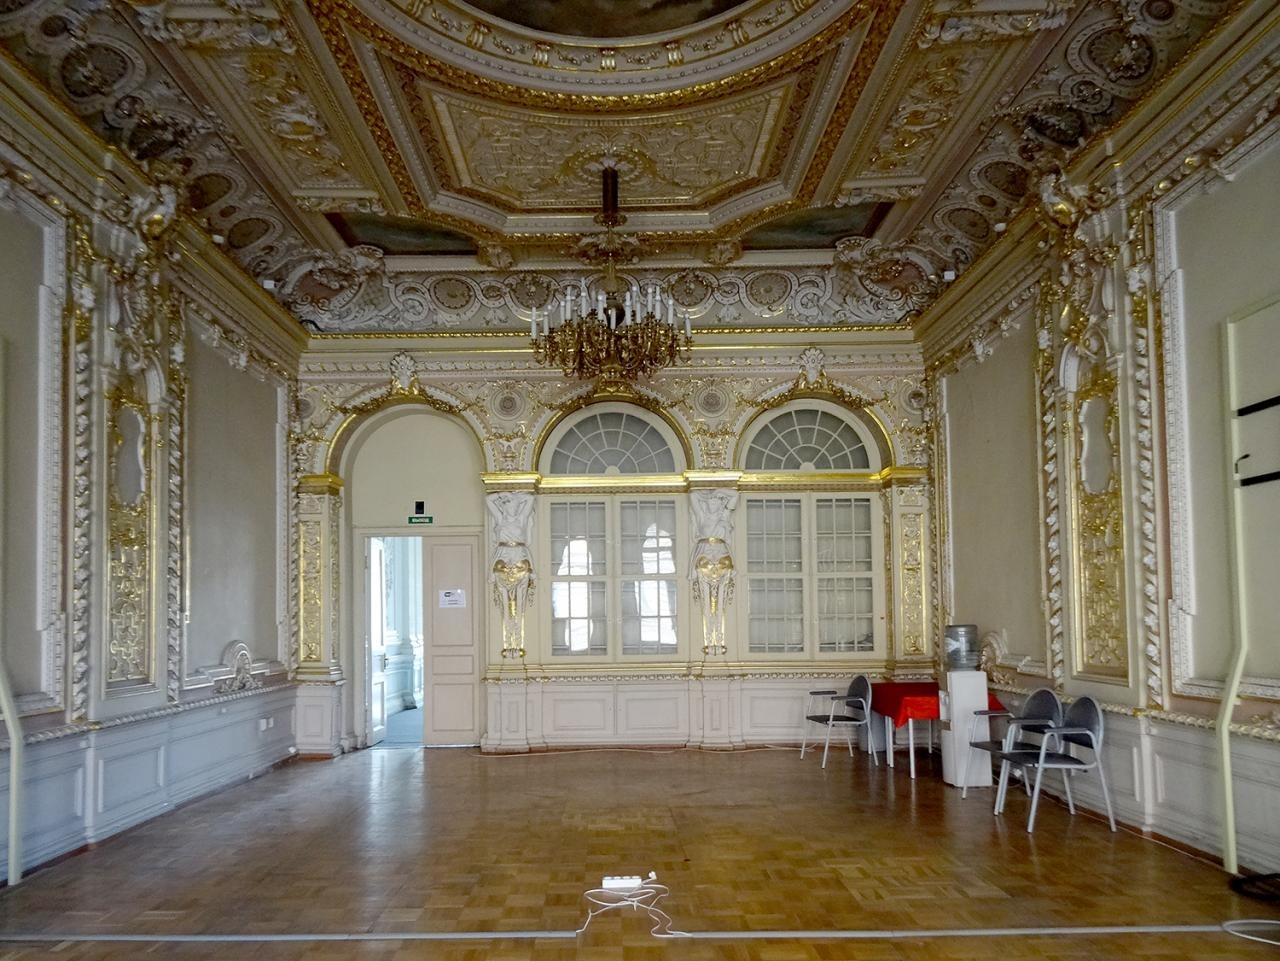 Дворец безбородко в санкт петербурге фото